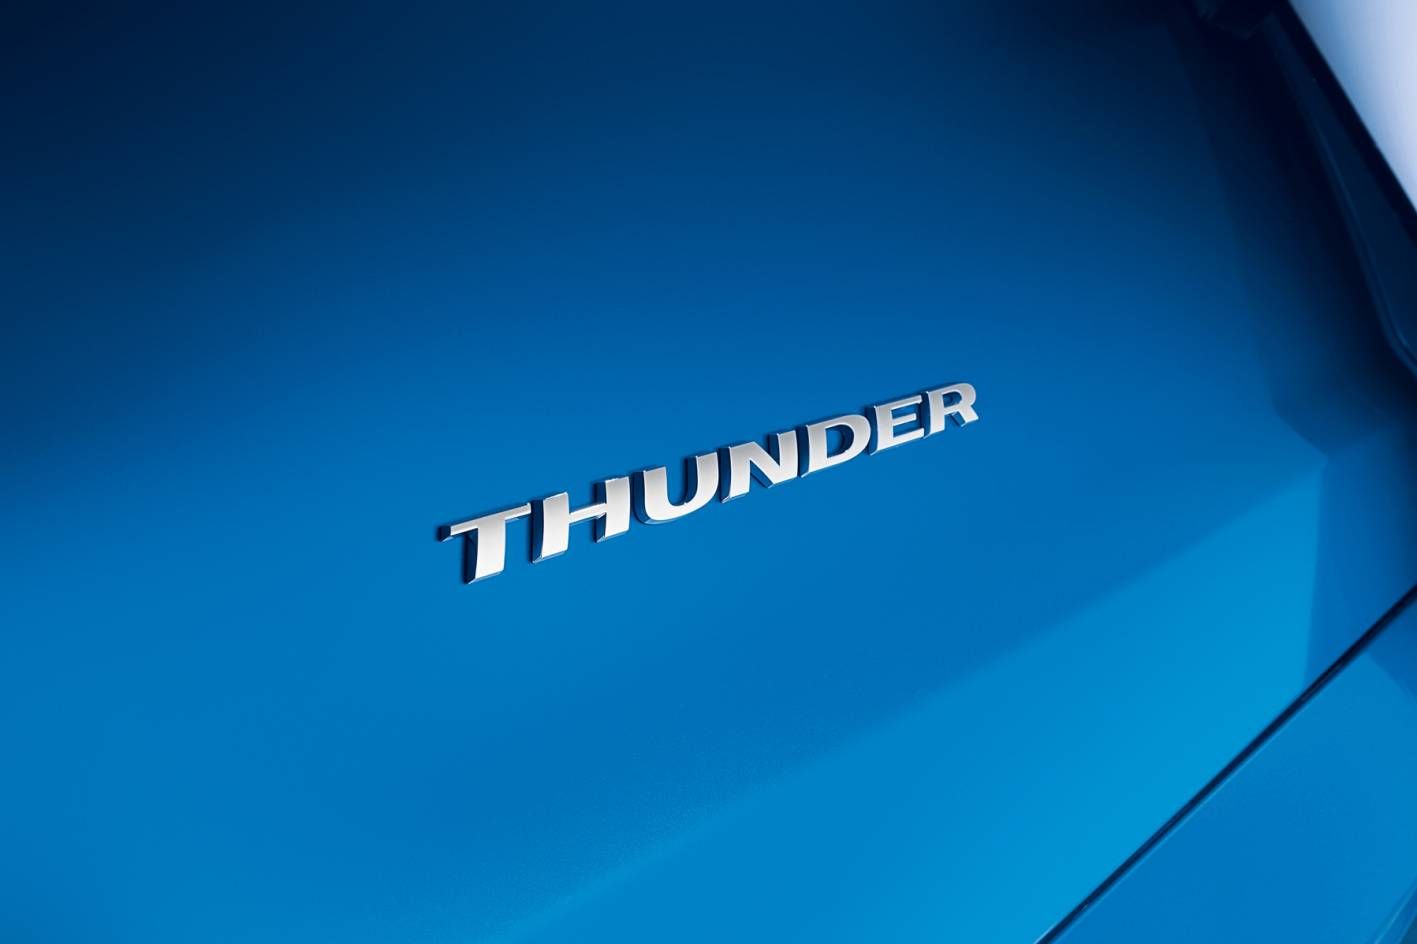 2011 Holden Thunder Ute